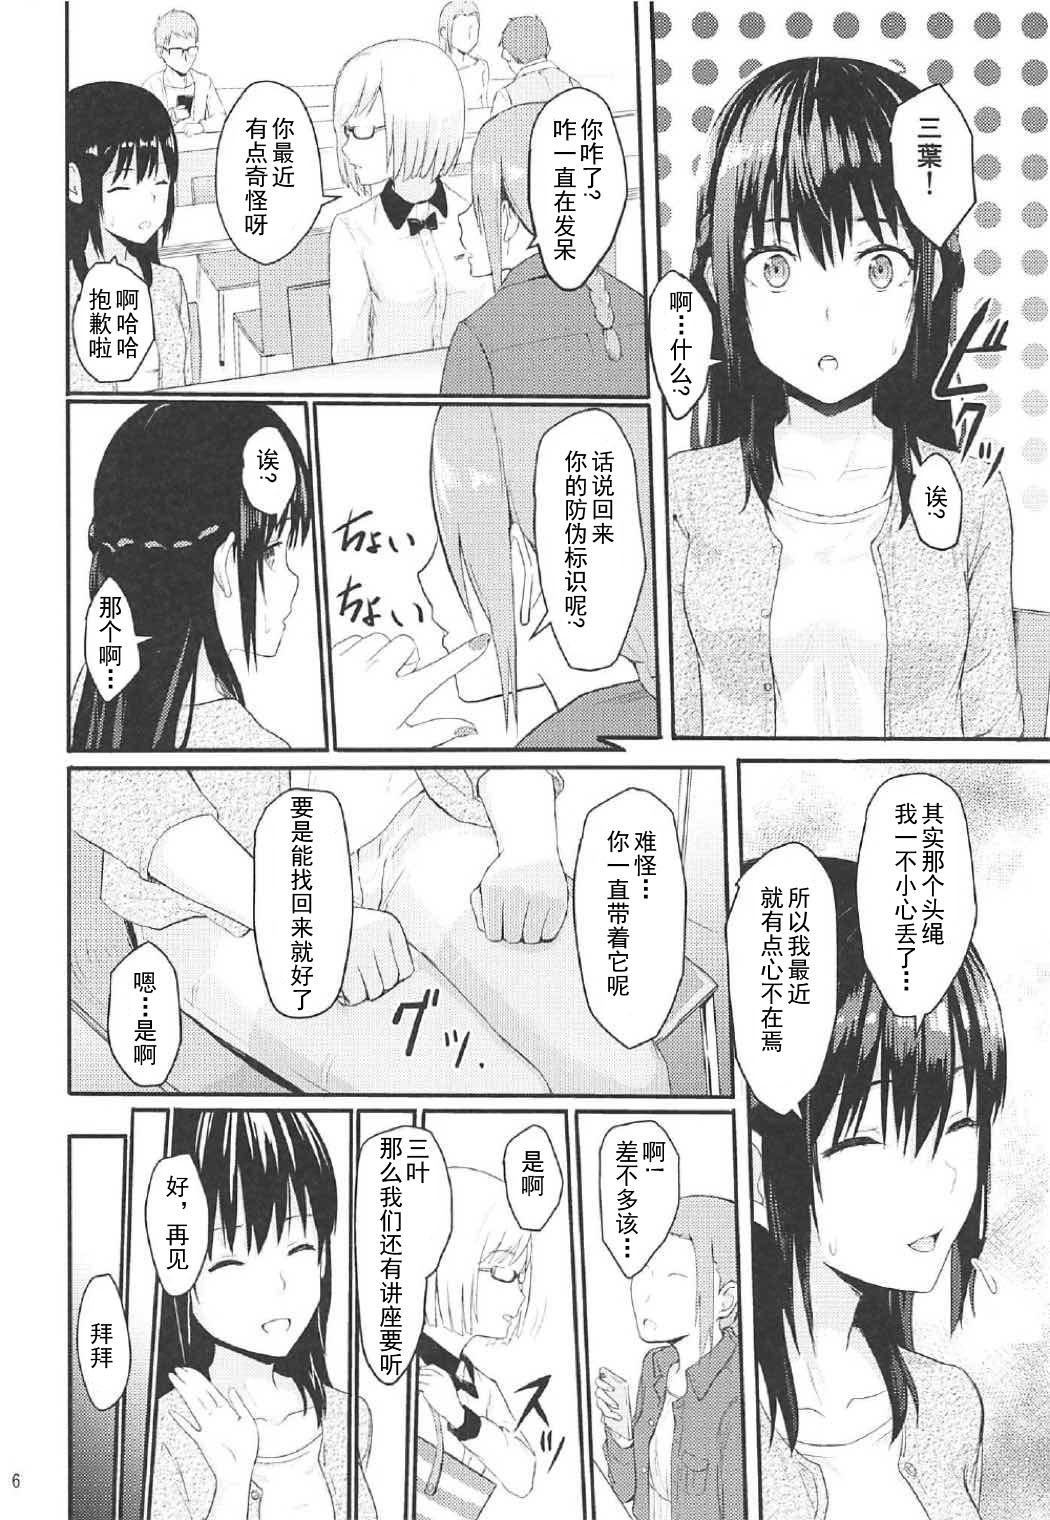 Milfporn Mitsuha - Kimi no na wa. Puba - Page 5